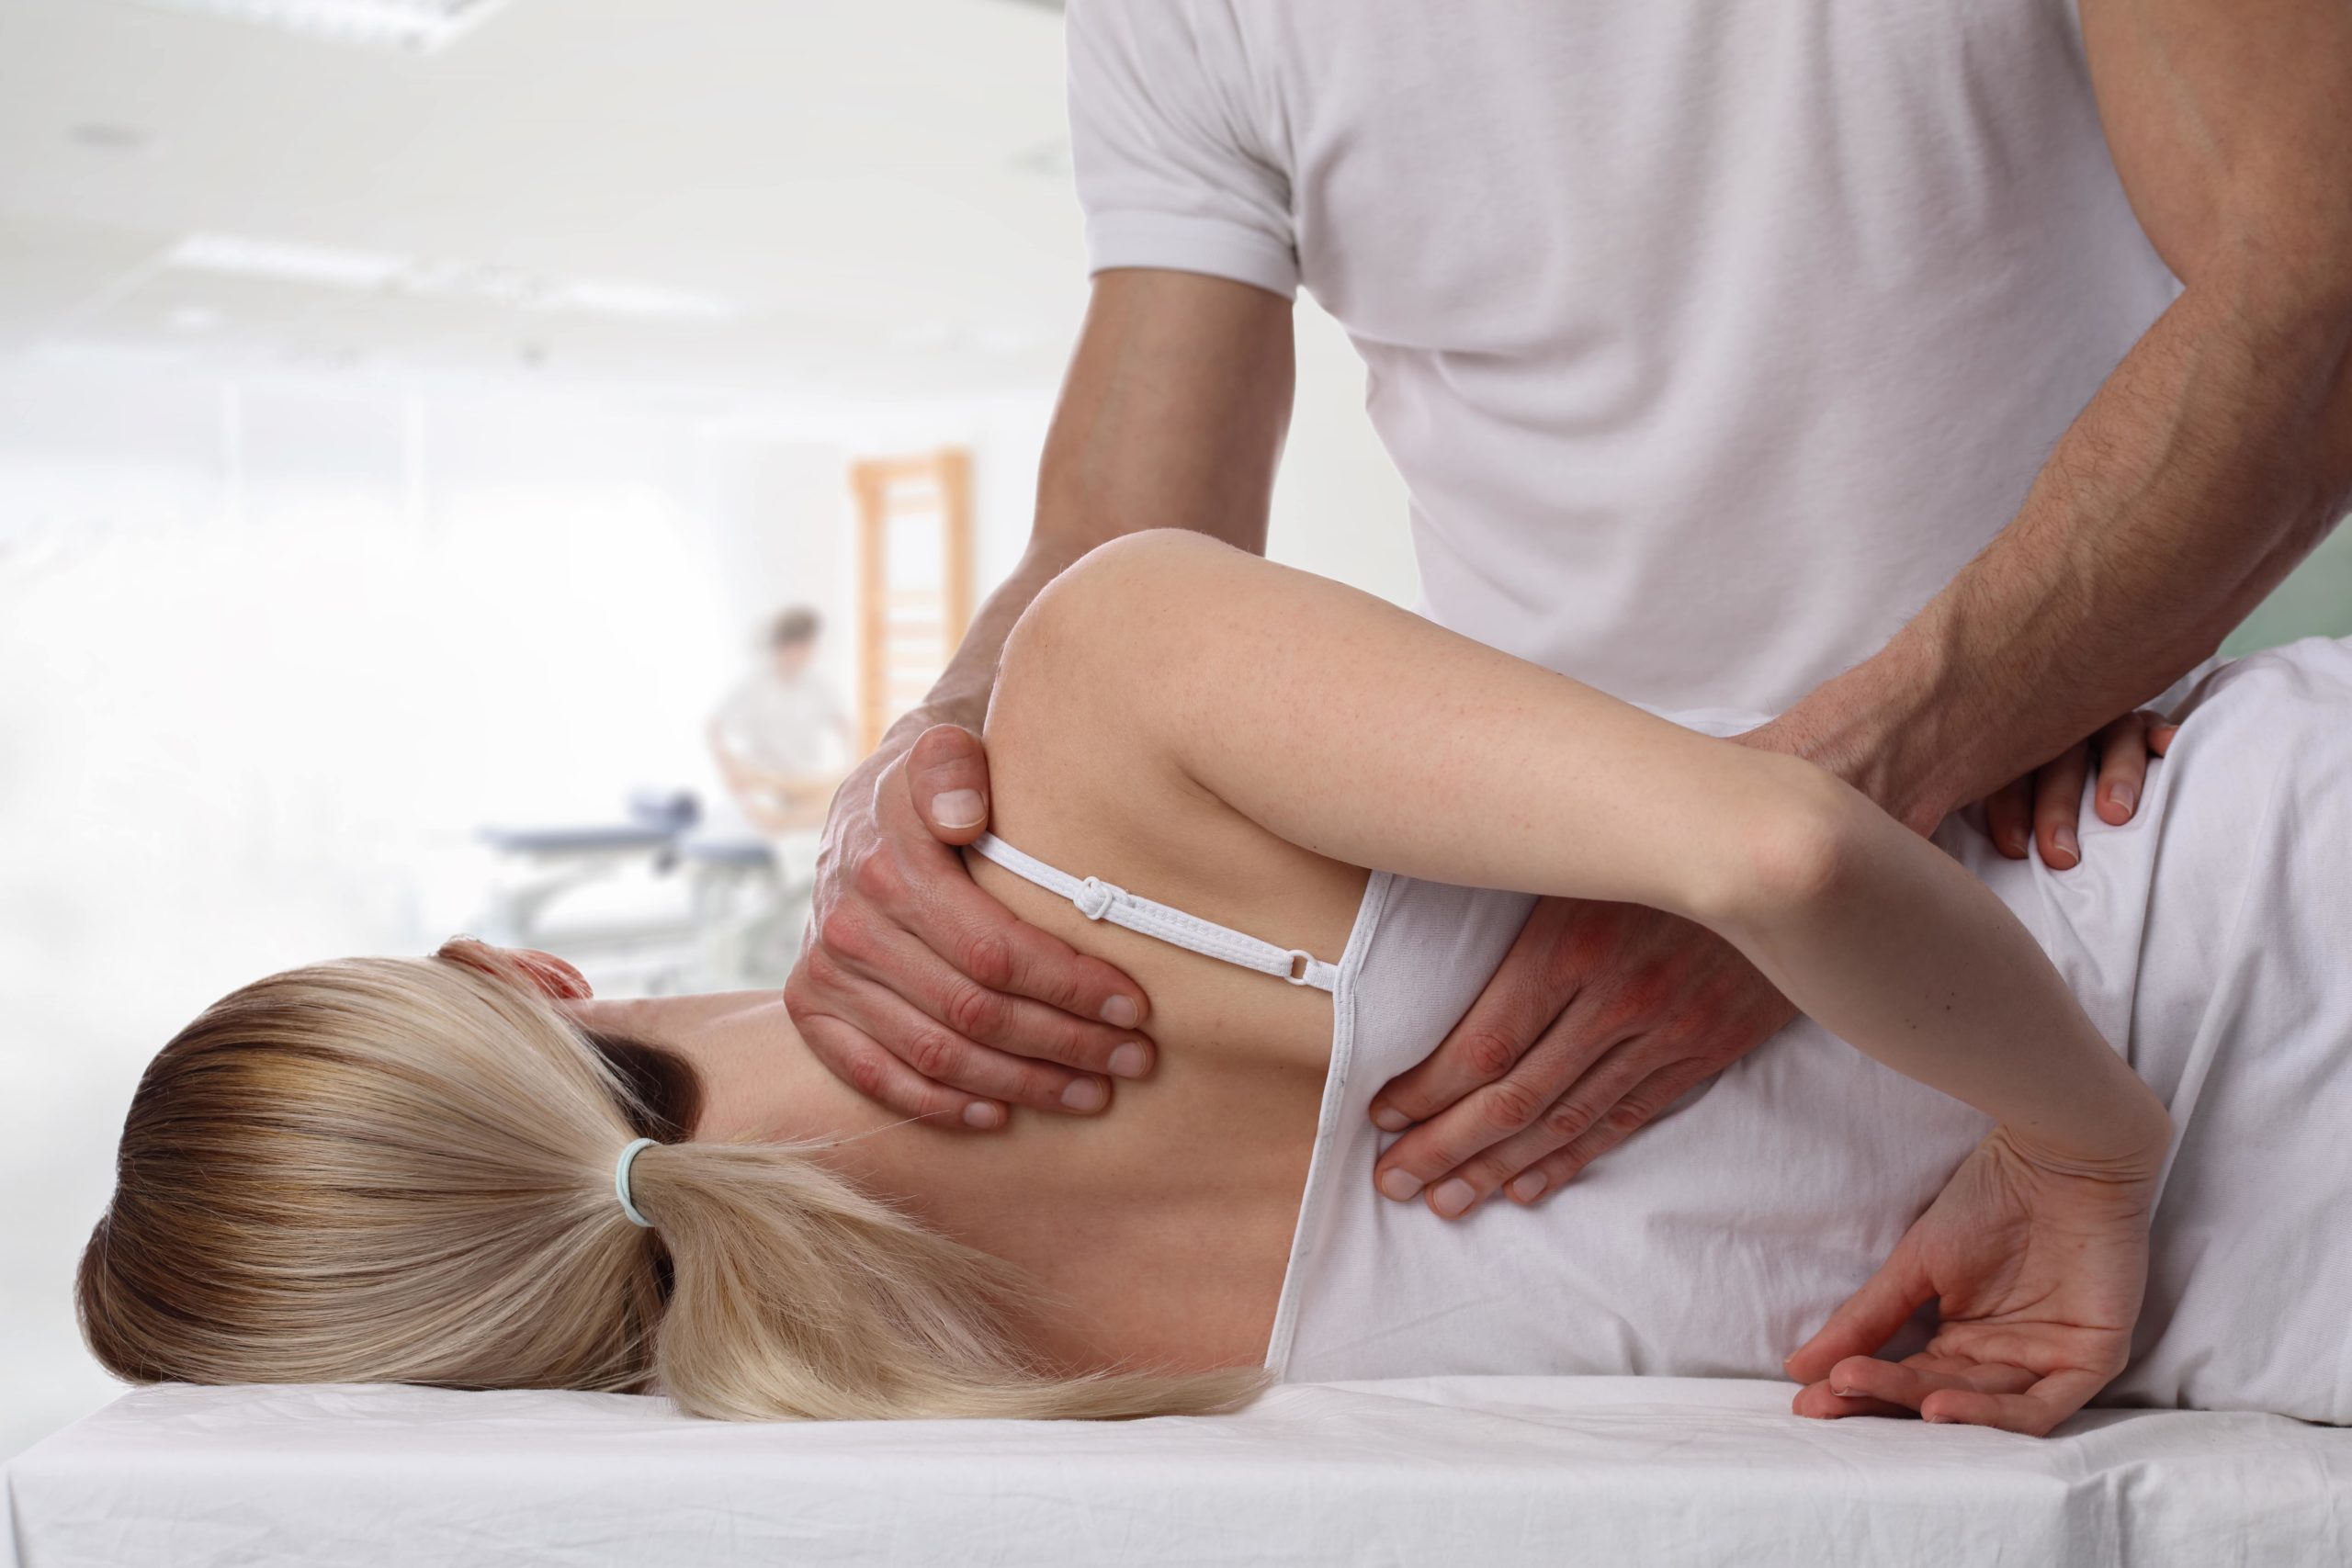 Marry massage. Хиропрактика мануальная терапия. Пир постизометрическая релаксация. Остеопатия остеопрактика. Массаж мануальная терапия.